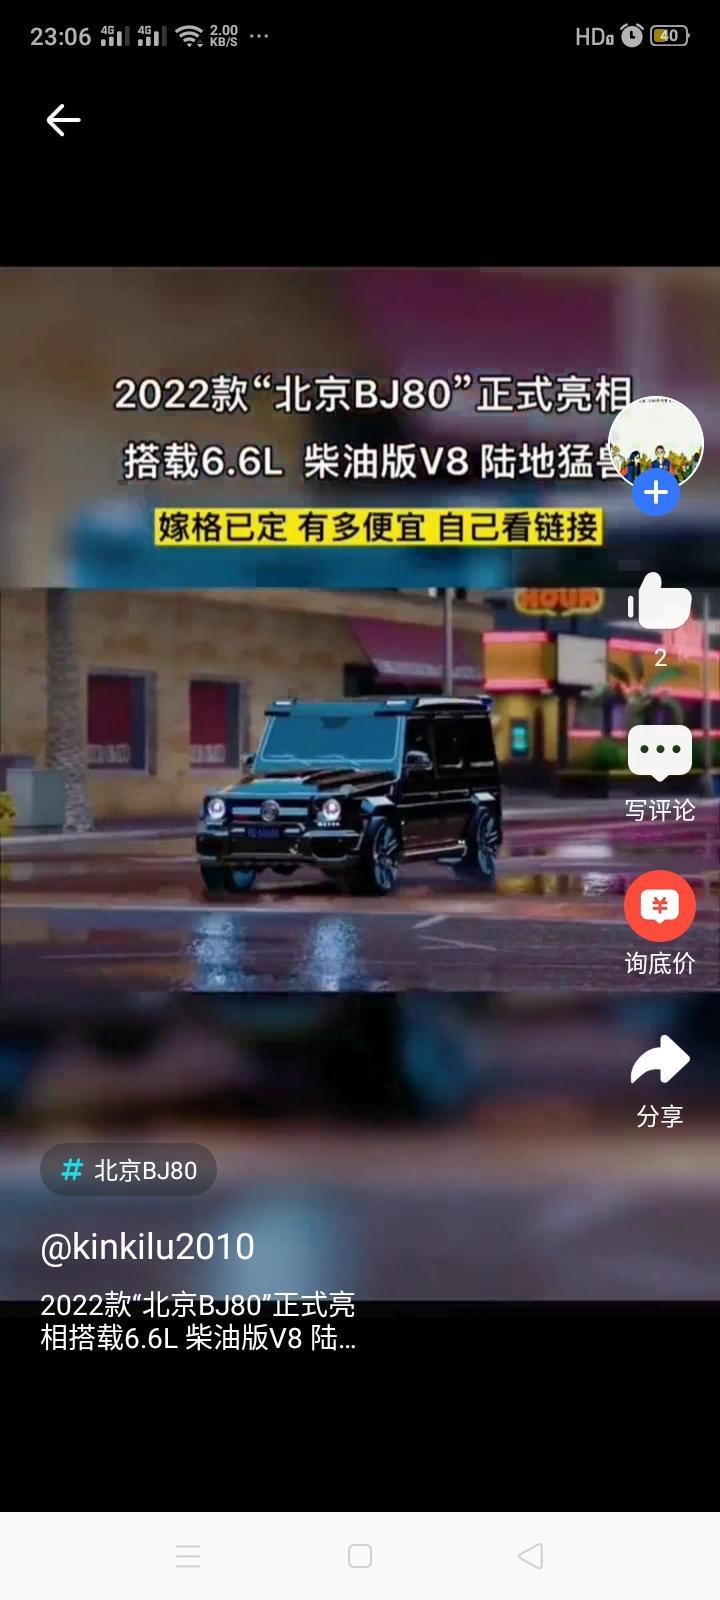 北京bj80最近有一些视频说22款北京80出柴油版是真的吗？还是自己改装的？有确切消息吗？